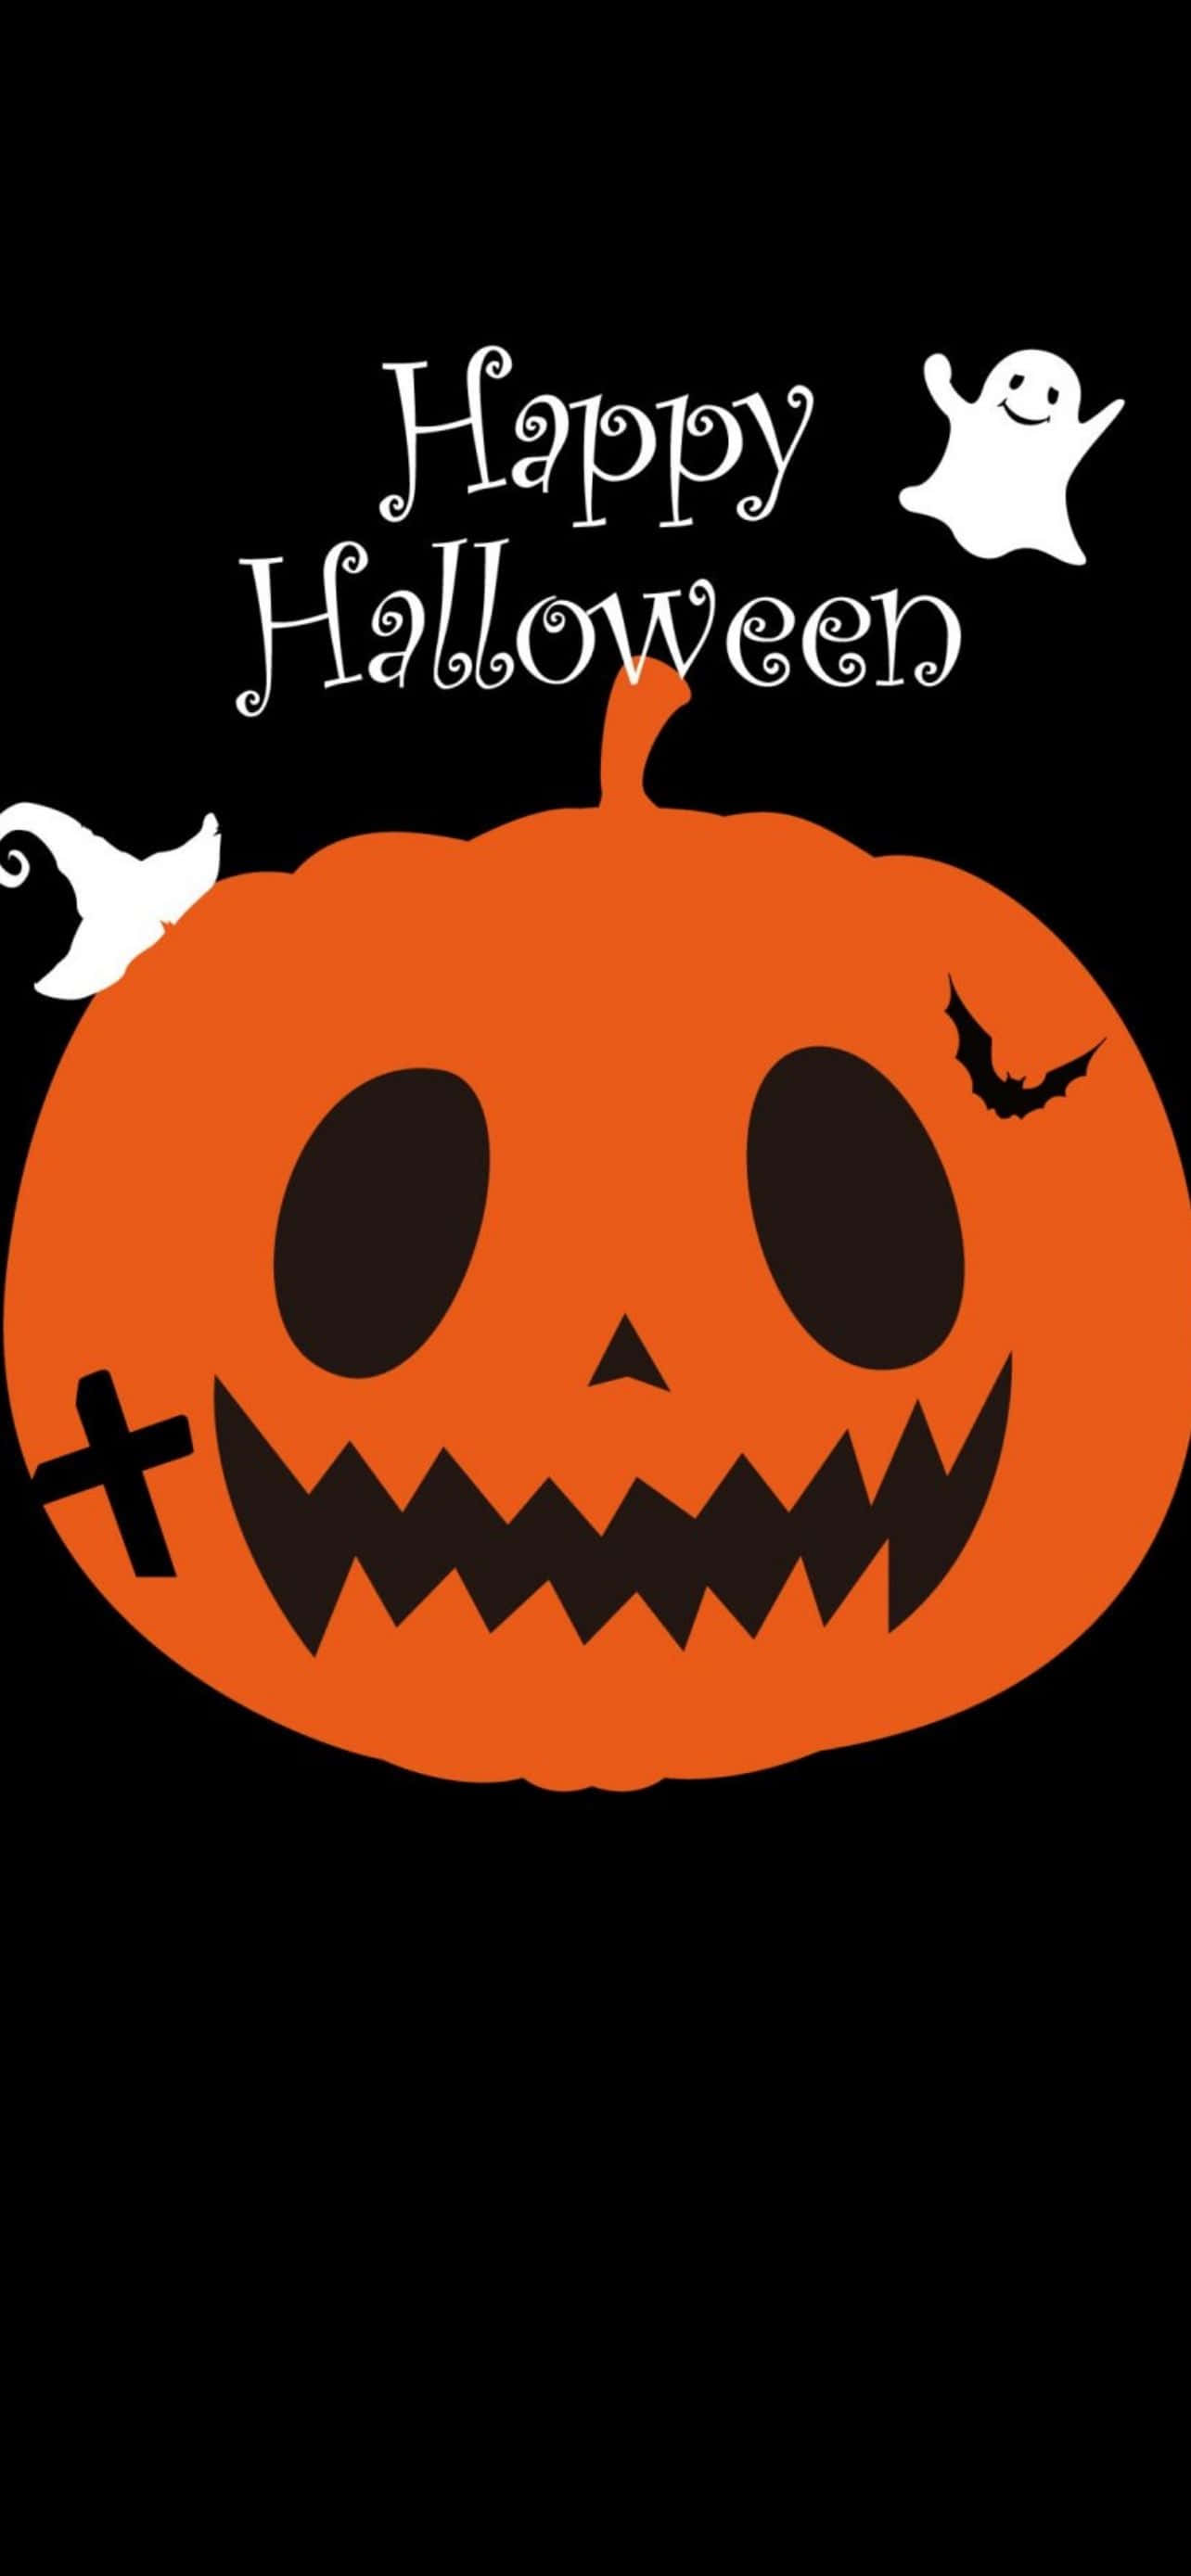 Beskrivningbus Eller Godis? Hämta Denna Spöklika Halloween-inspirerade Iphone-bakgrund För Att Uttrycka Din Kärlek För Årets Bästa Högtid!